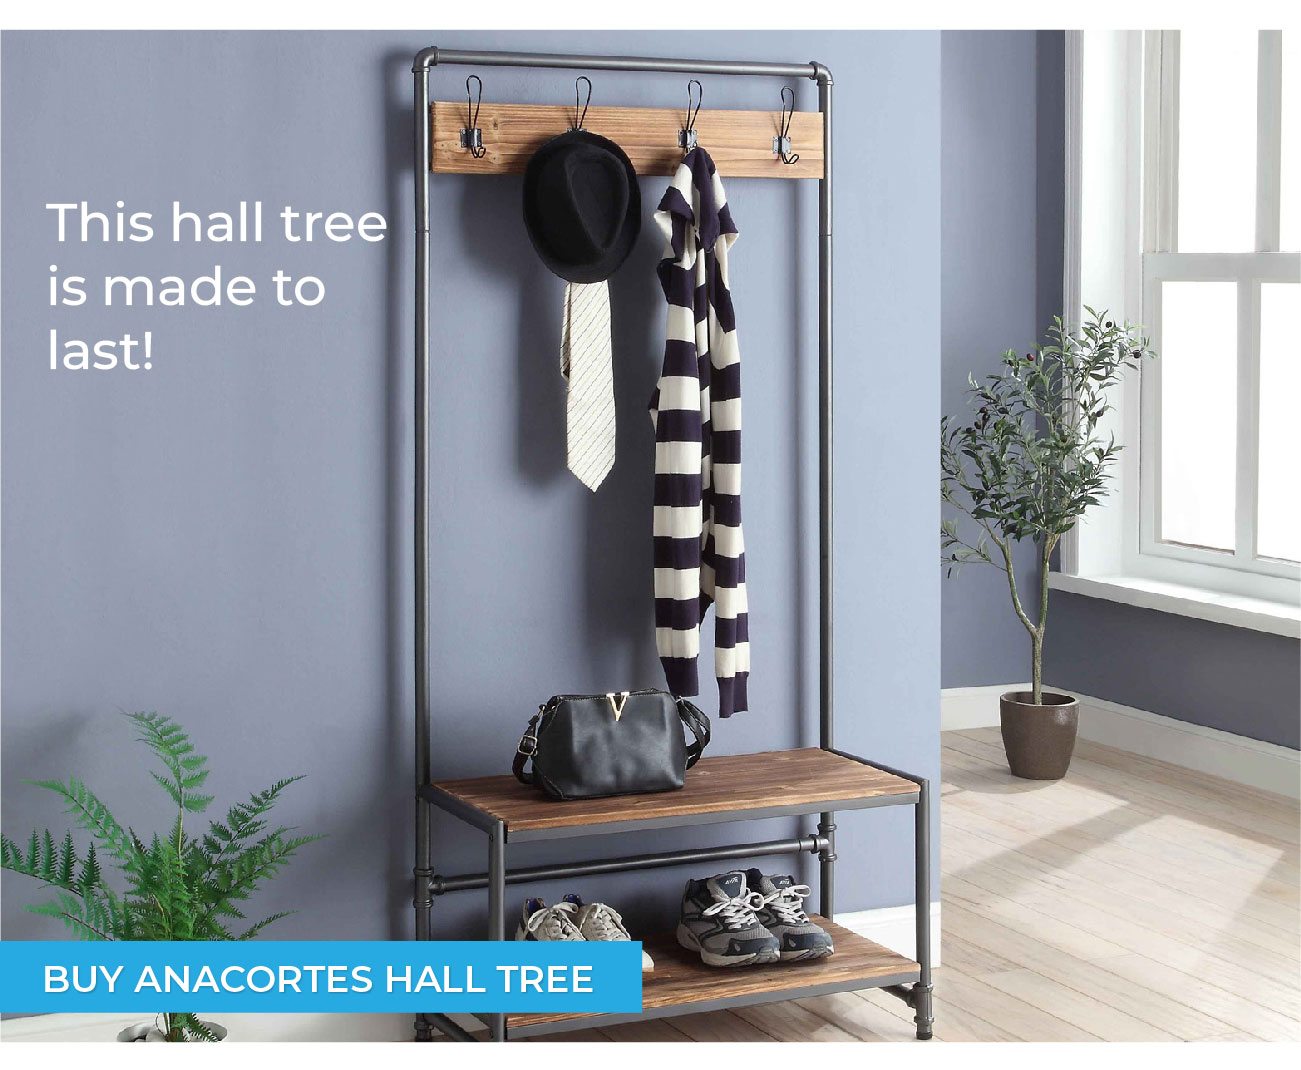 Anacortes Hall Tree